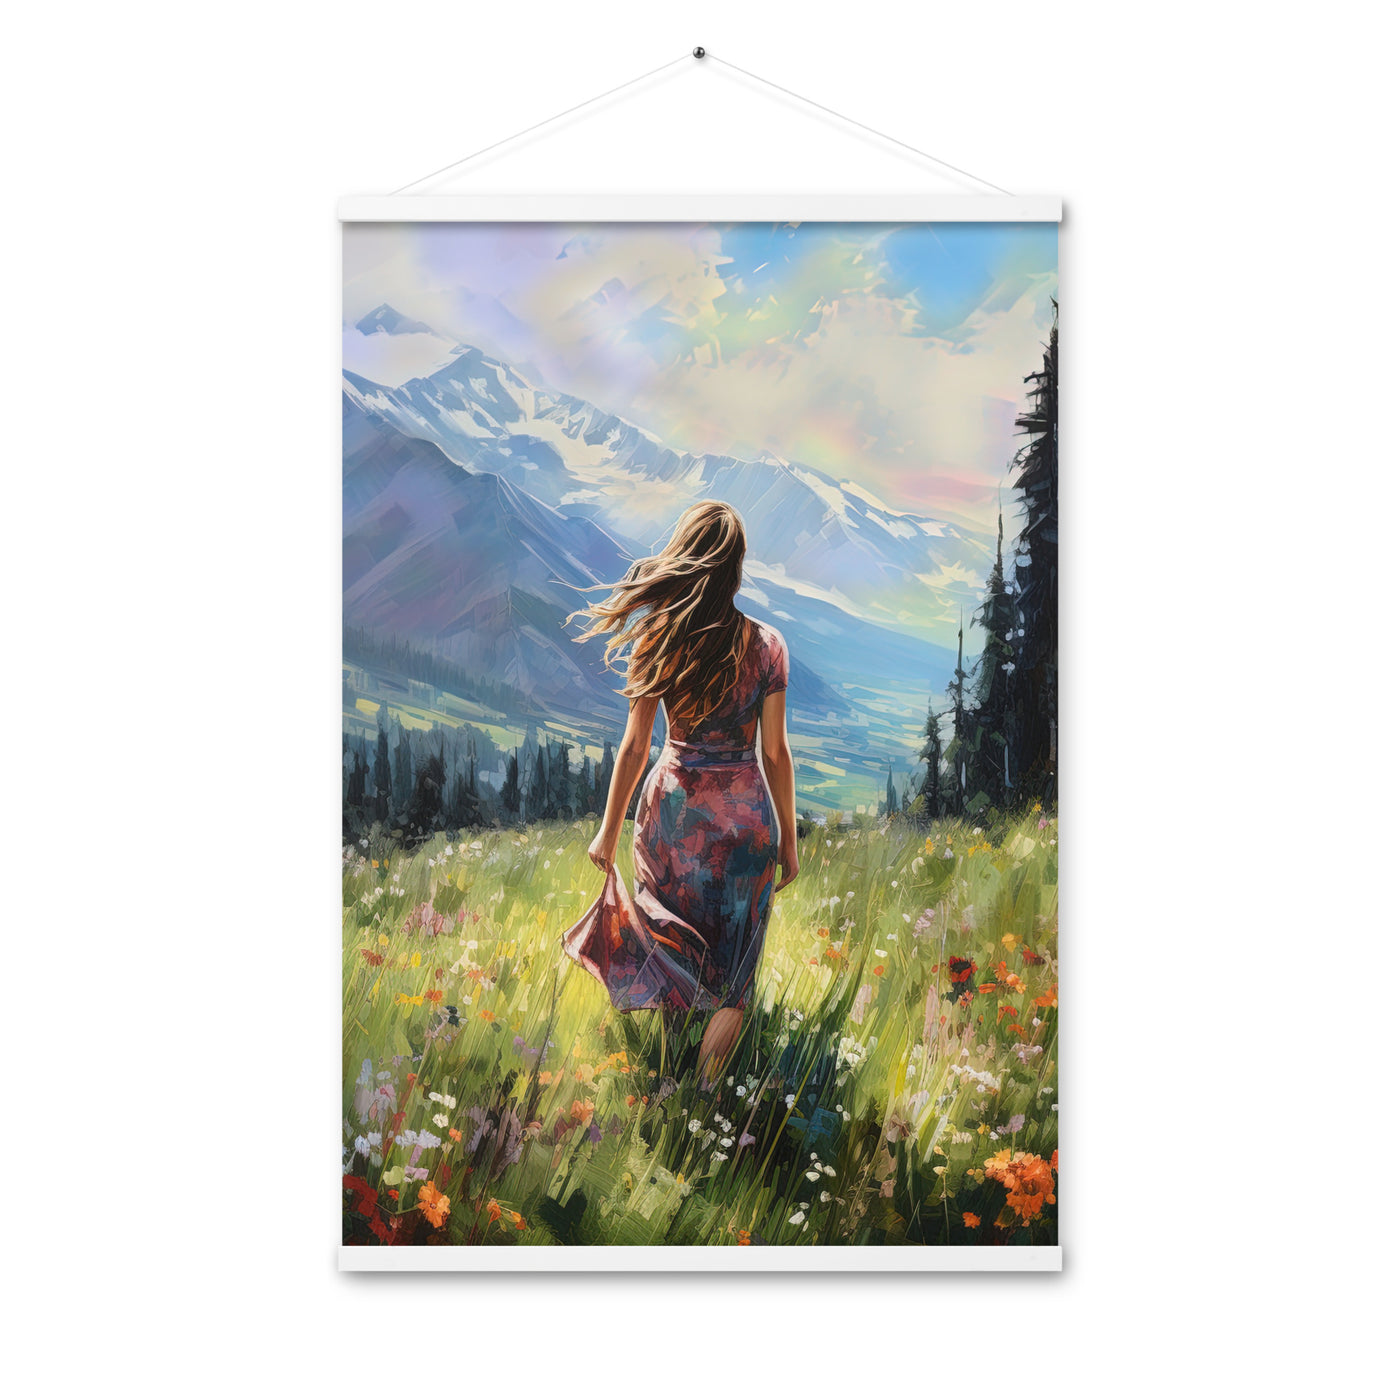 Frau mit langen Kleid im Feld mit Blumen - Berge im Hintergrund - Malerei - Premium Poster mit Aufhängung berge xxx 61 x 91.4 cm